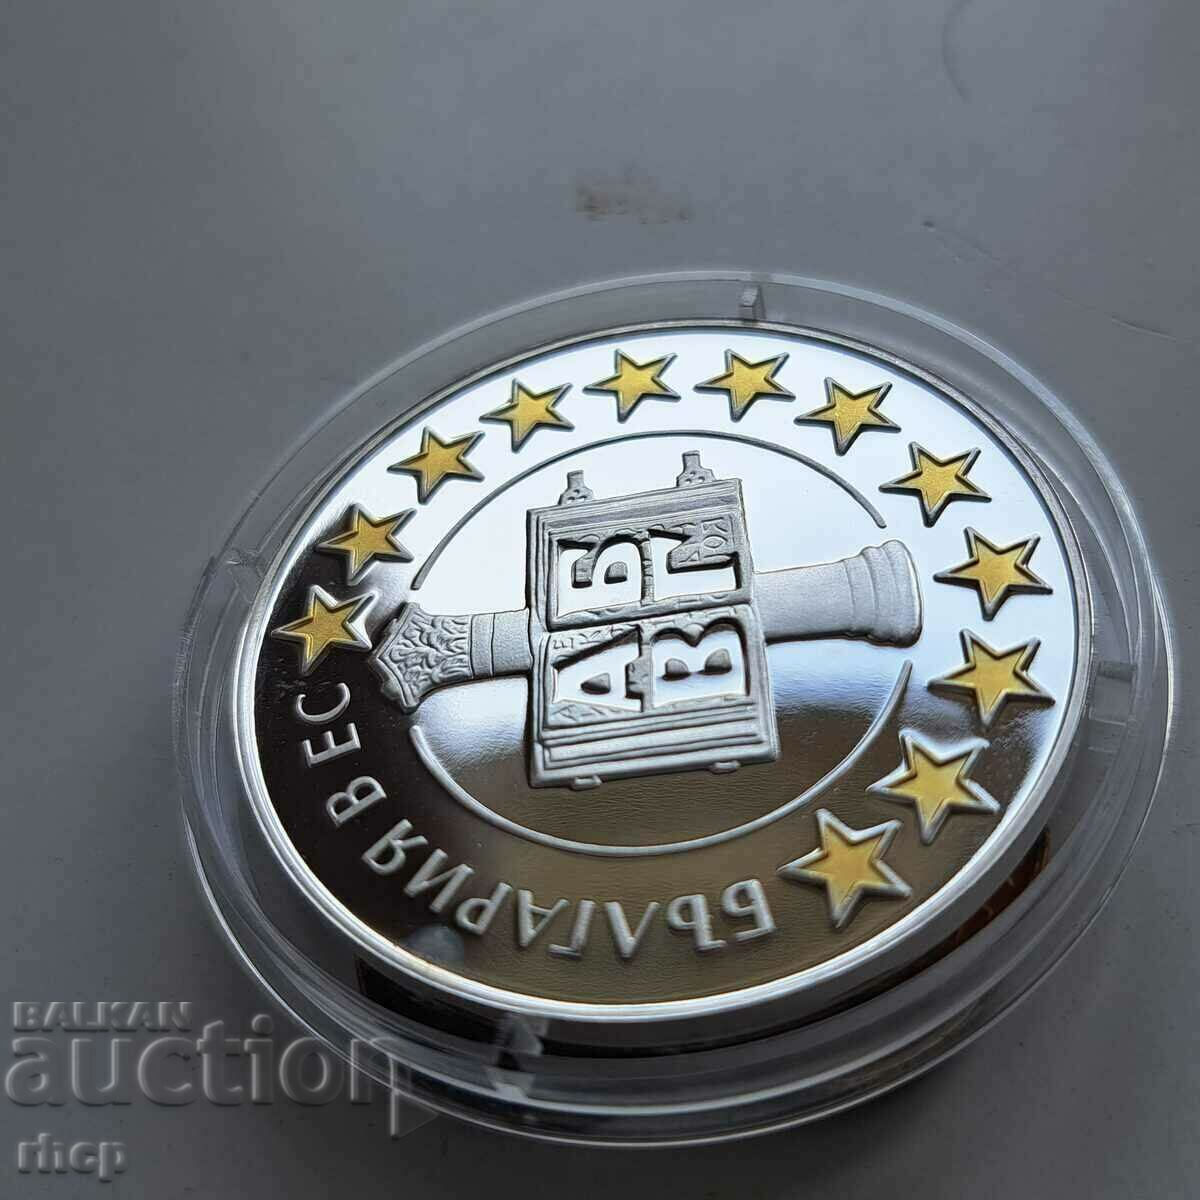 Bulgaria in the EU 2007 silver coin